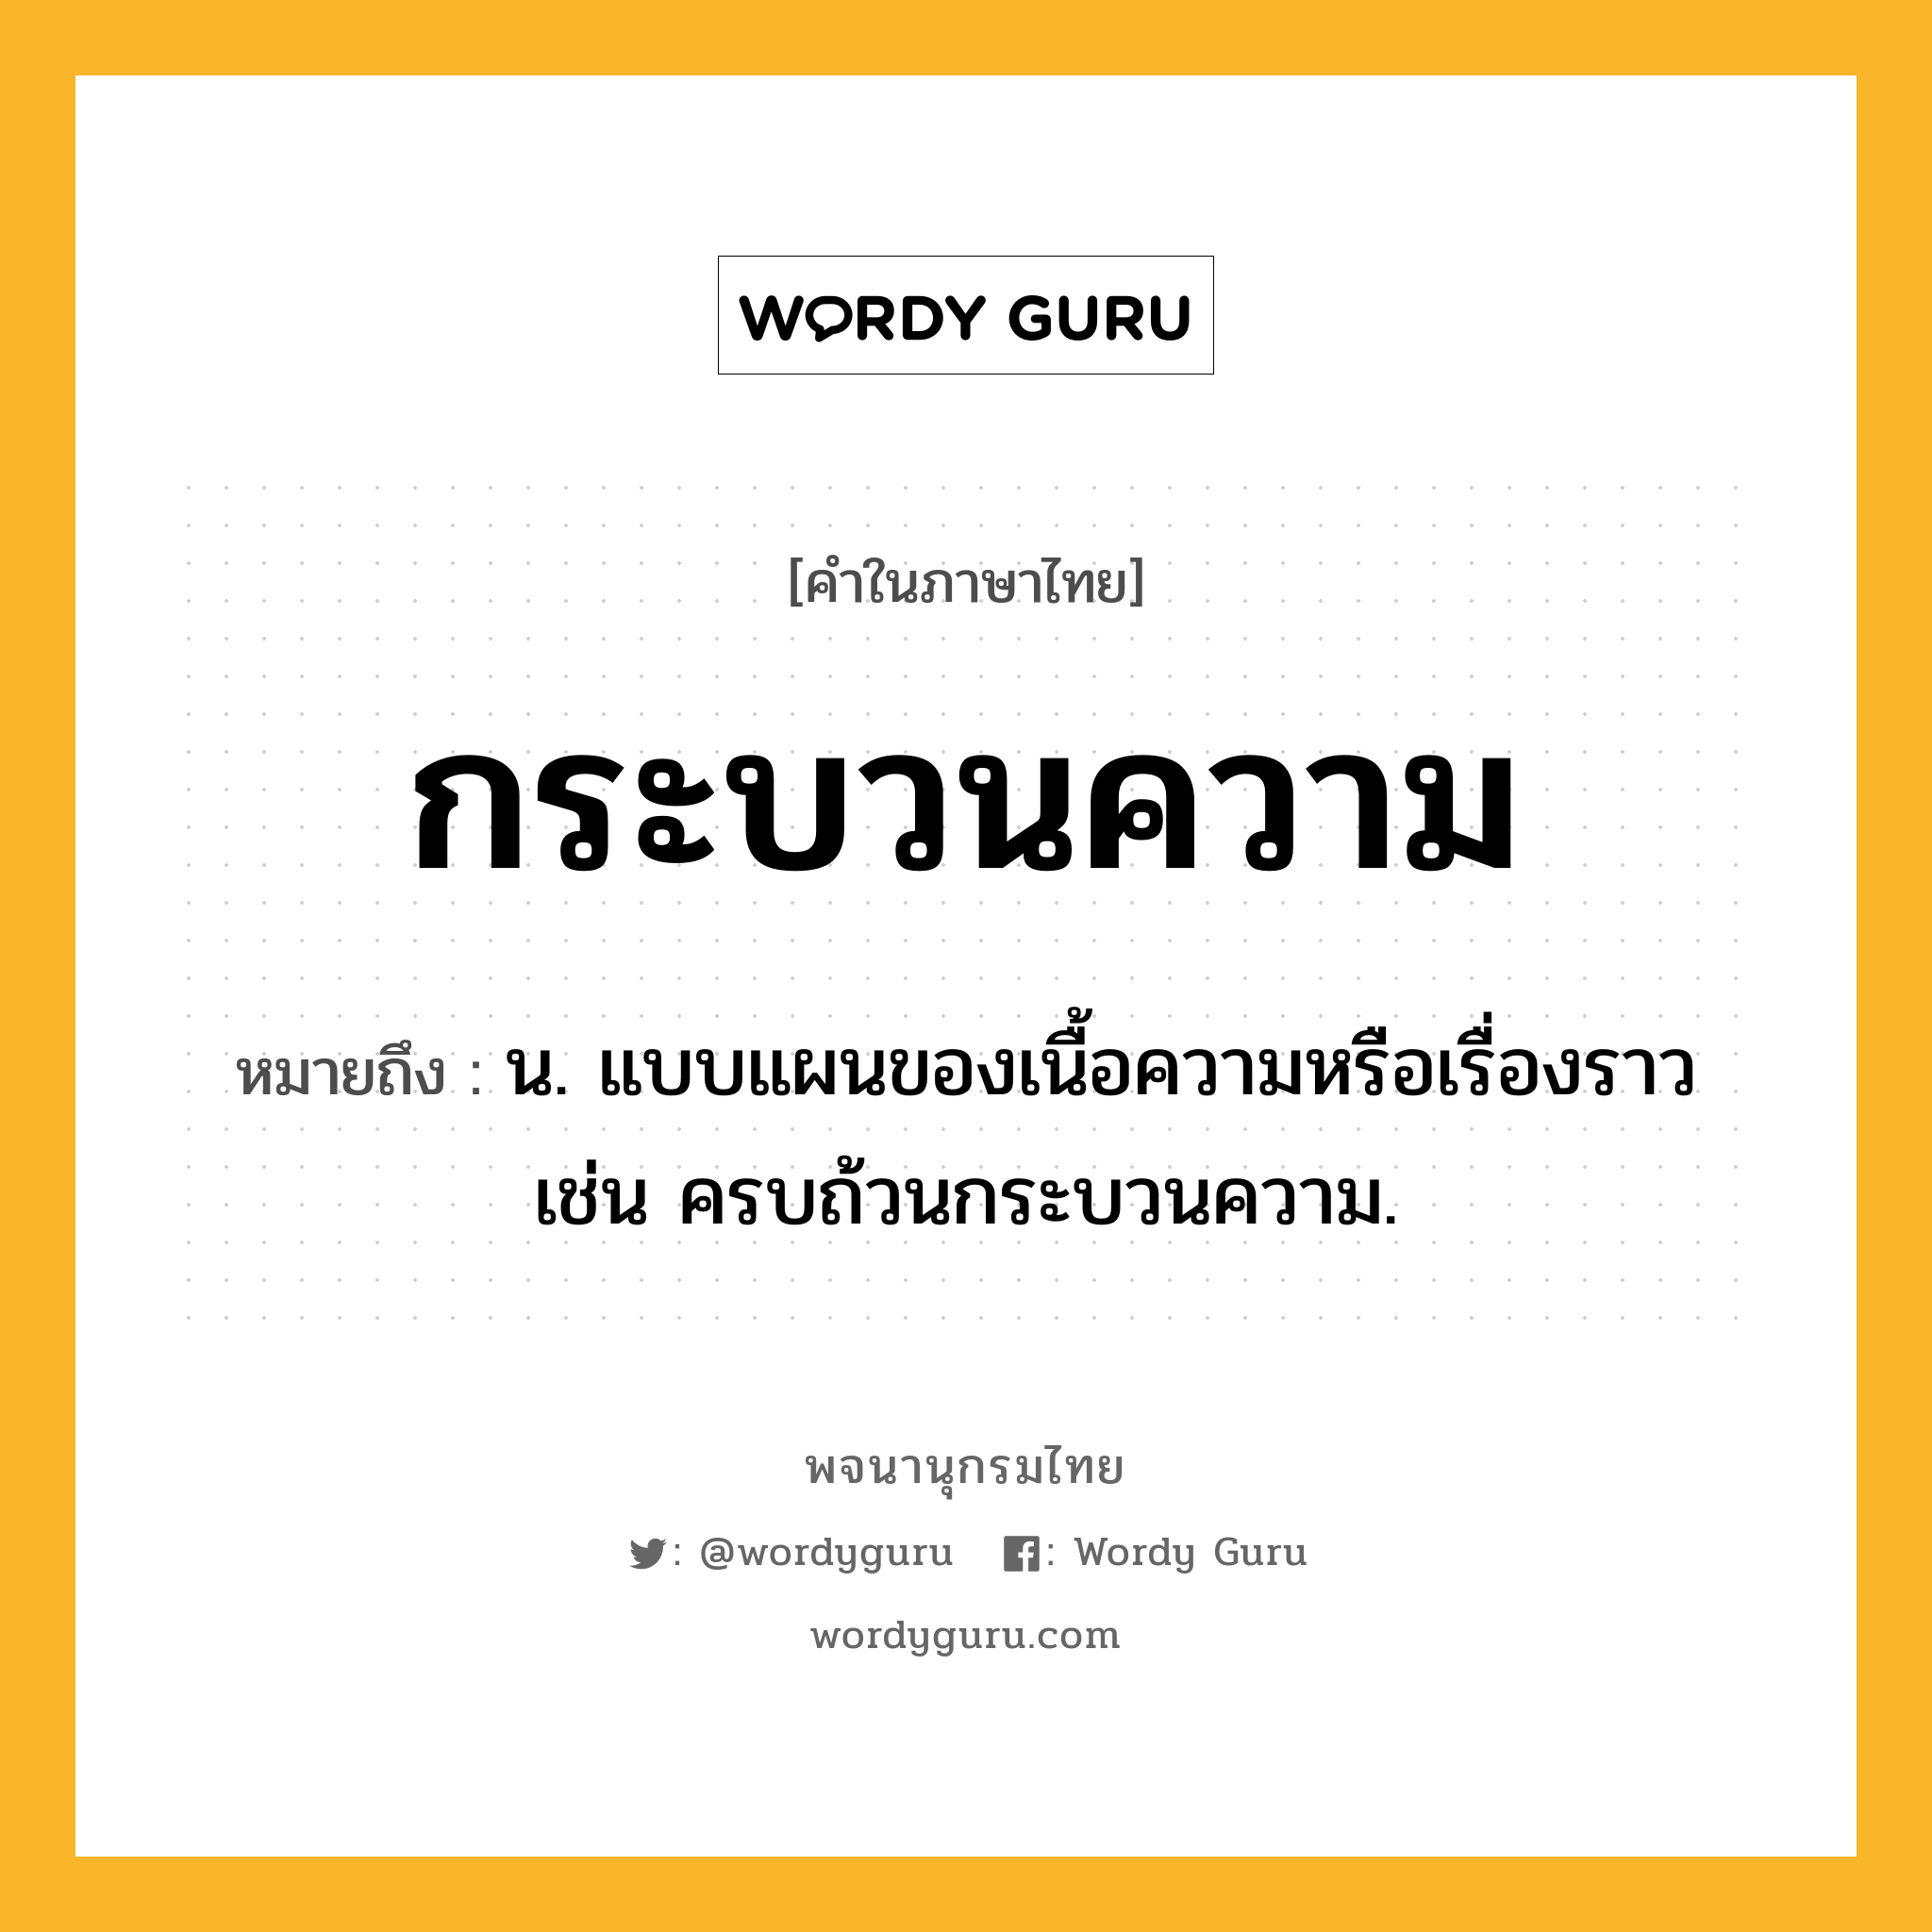 กระบวนความ ความหมาย หมายถึงอะไร?, คำในภาษาไทย กระบวนความ หมายถึง น. แบบแผนของเนื้อความหรือเรื่องราว เช่น ครบถ้วนกระบวนความ.